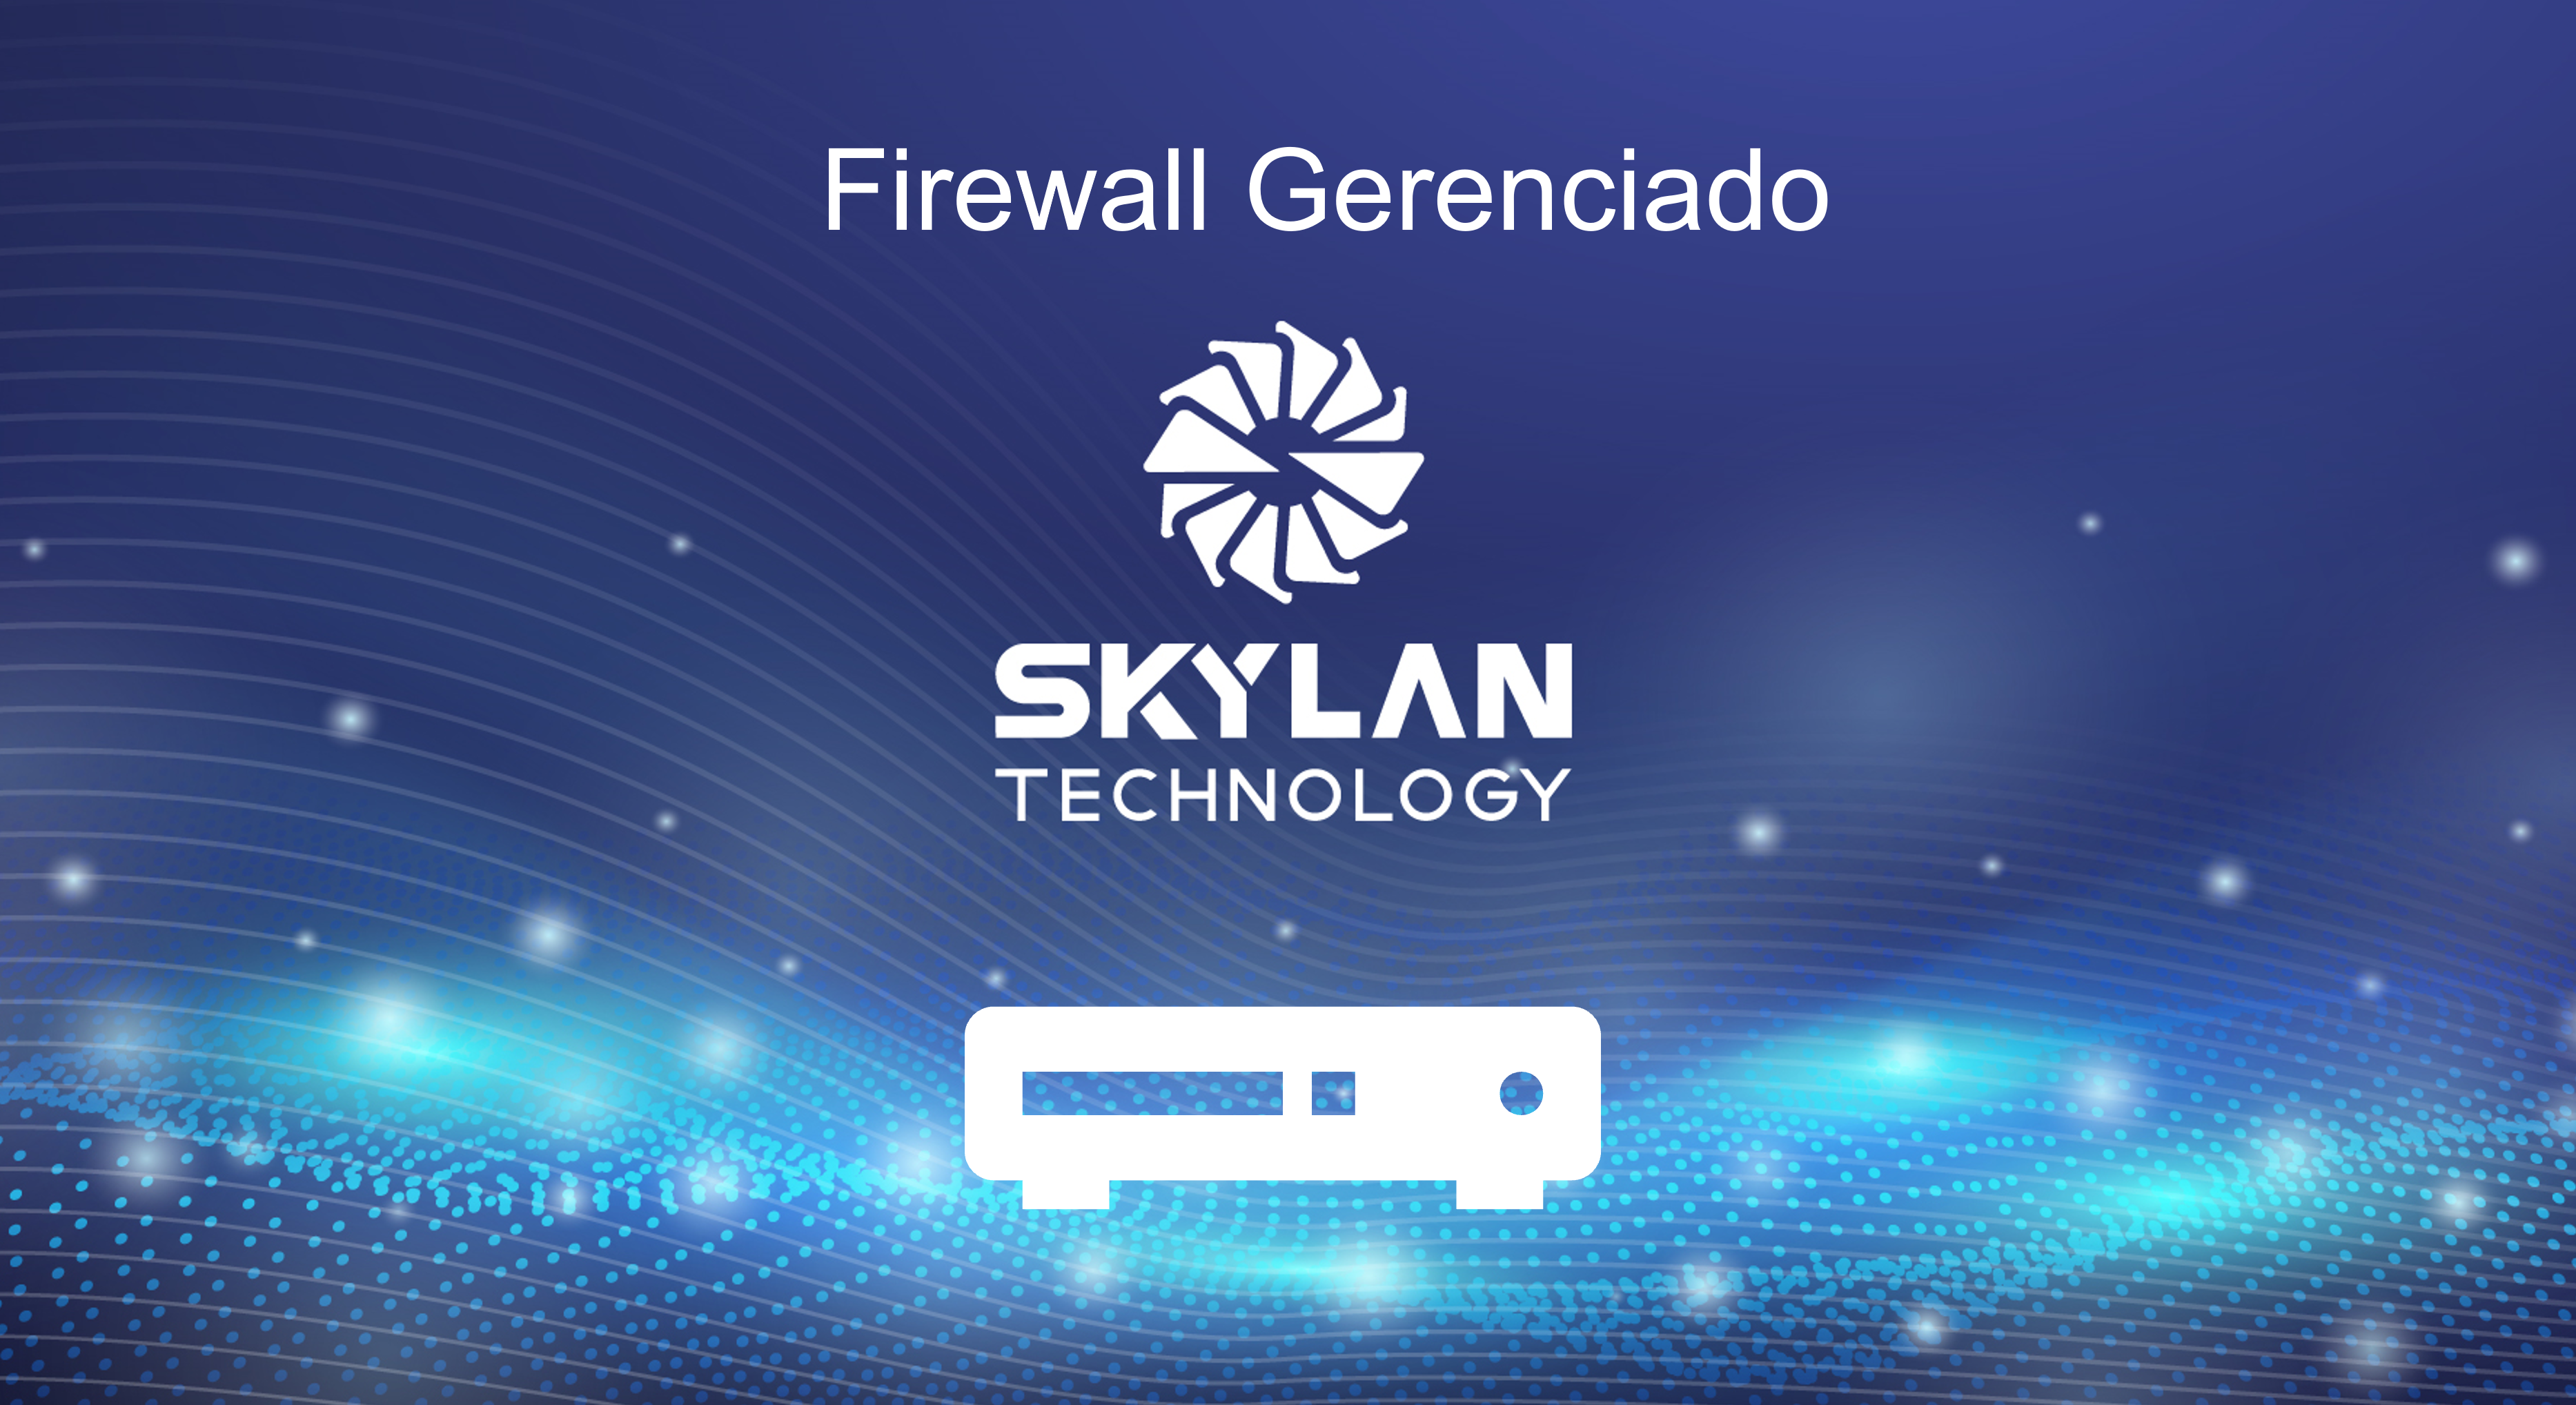 Firewall Gerenciado